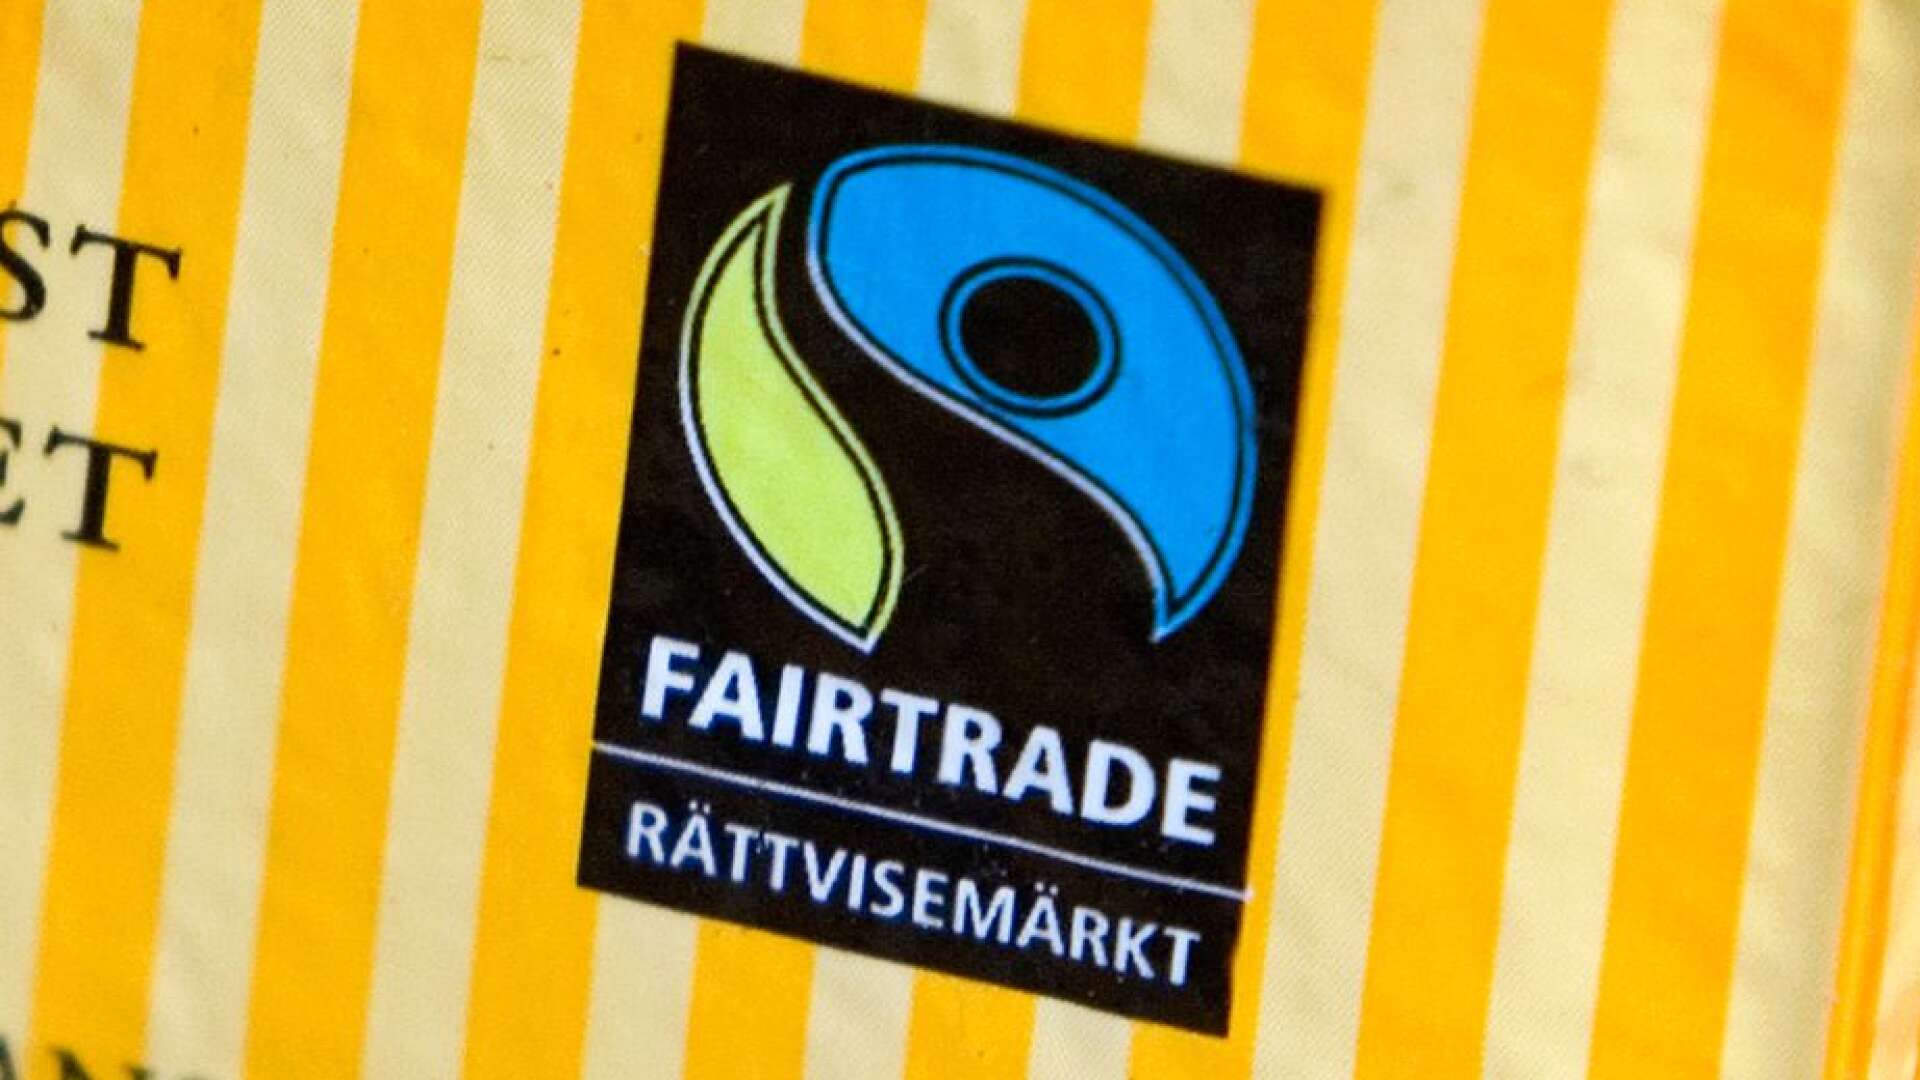 Flera studier har visat att Fairtrade gör positiv skillnad för odlare och anställda i olika länder, skriver Mathias Lindquist, Monika Bubholz, Maria Norell och Ulrika Simonsson.